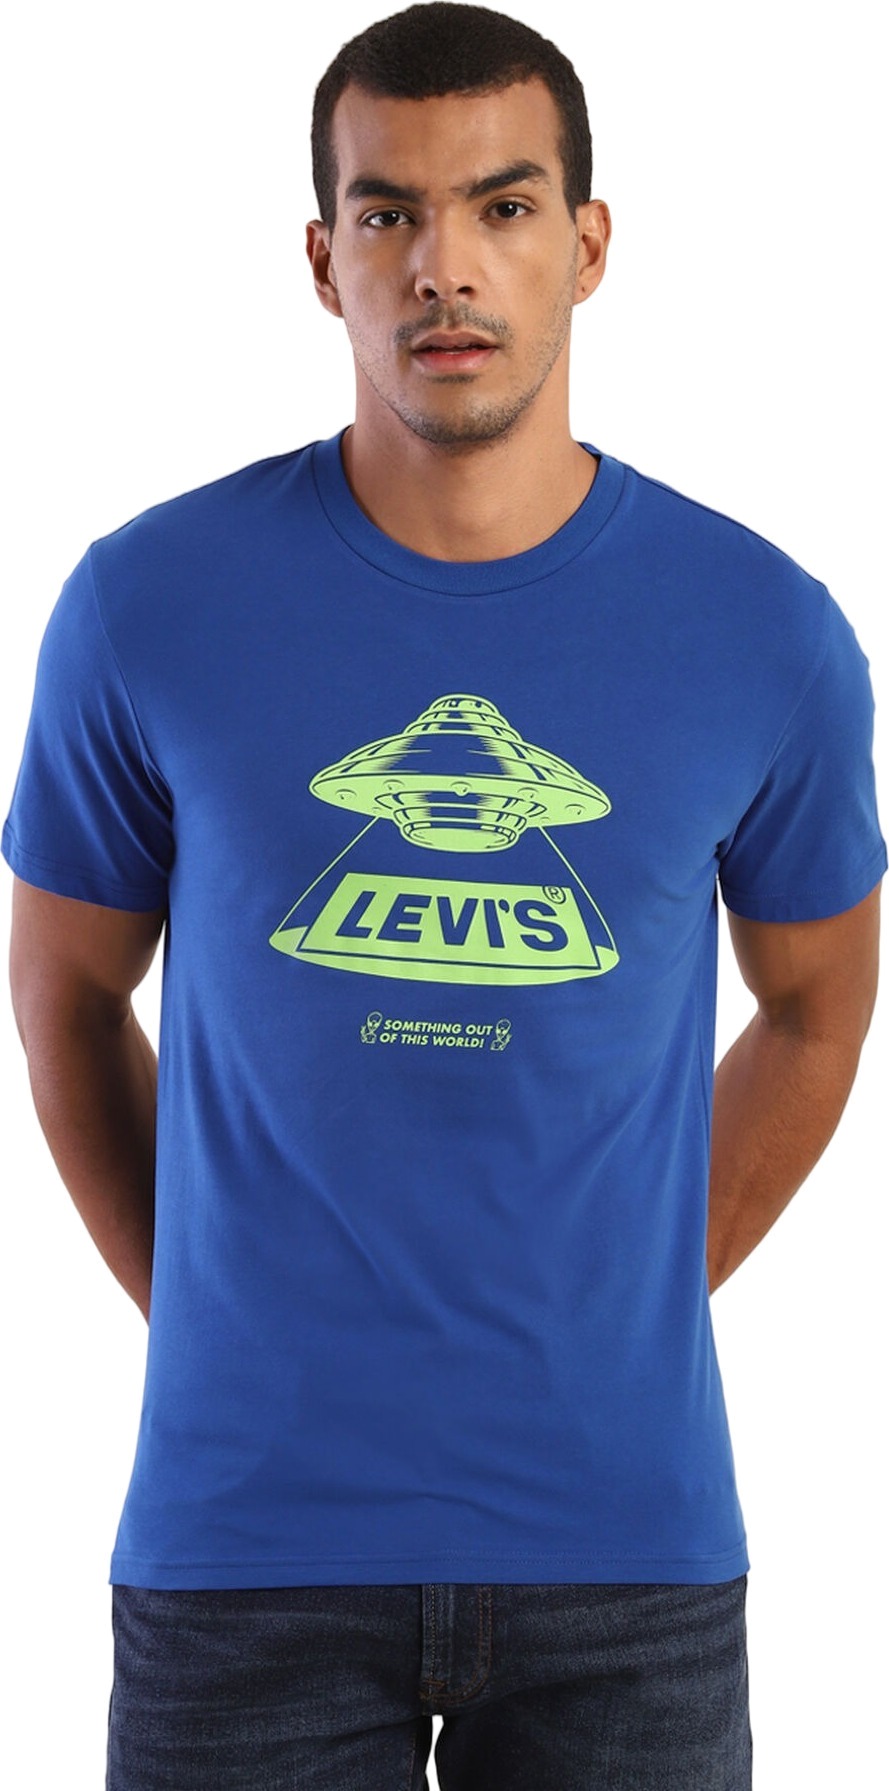 Футболка мужская Levis 16960-0669 синяя XL – купить в Москве, цены в интернет-магазинах на Мегамаркет